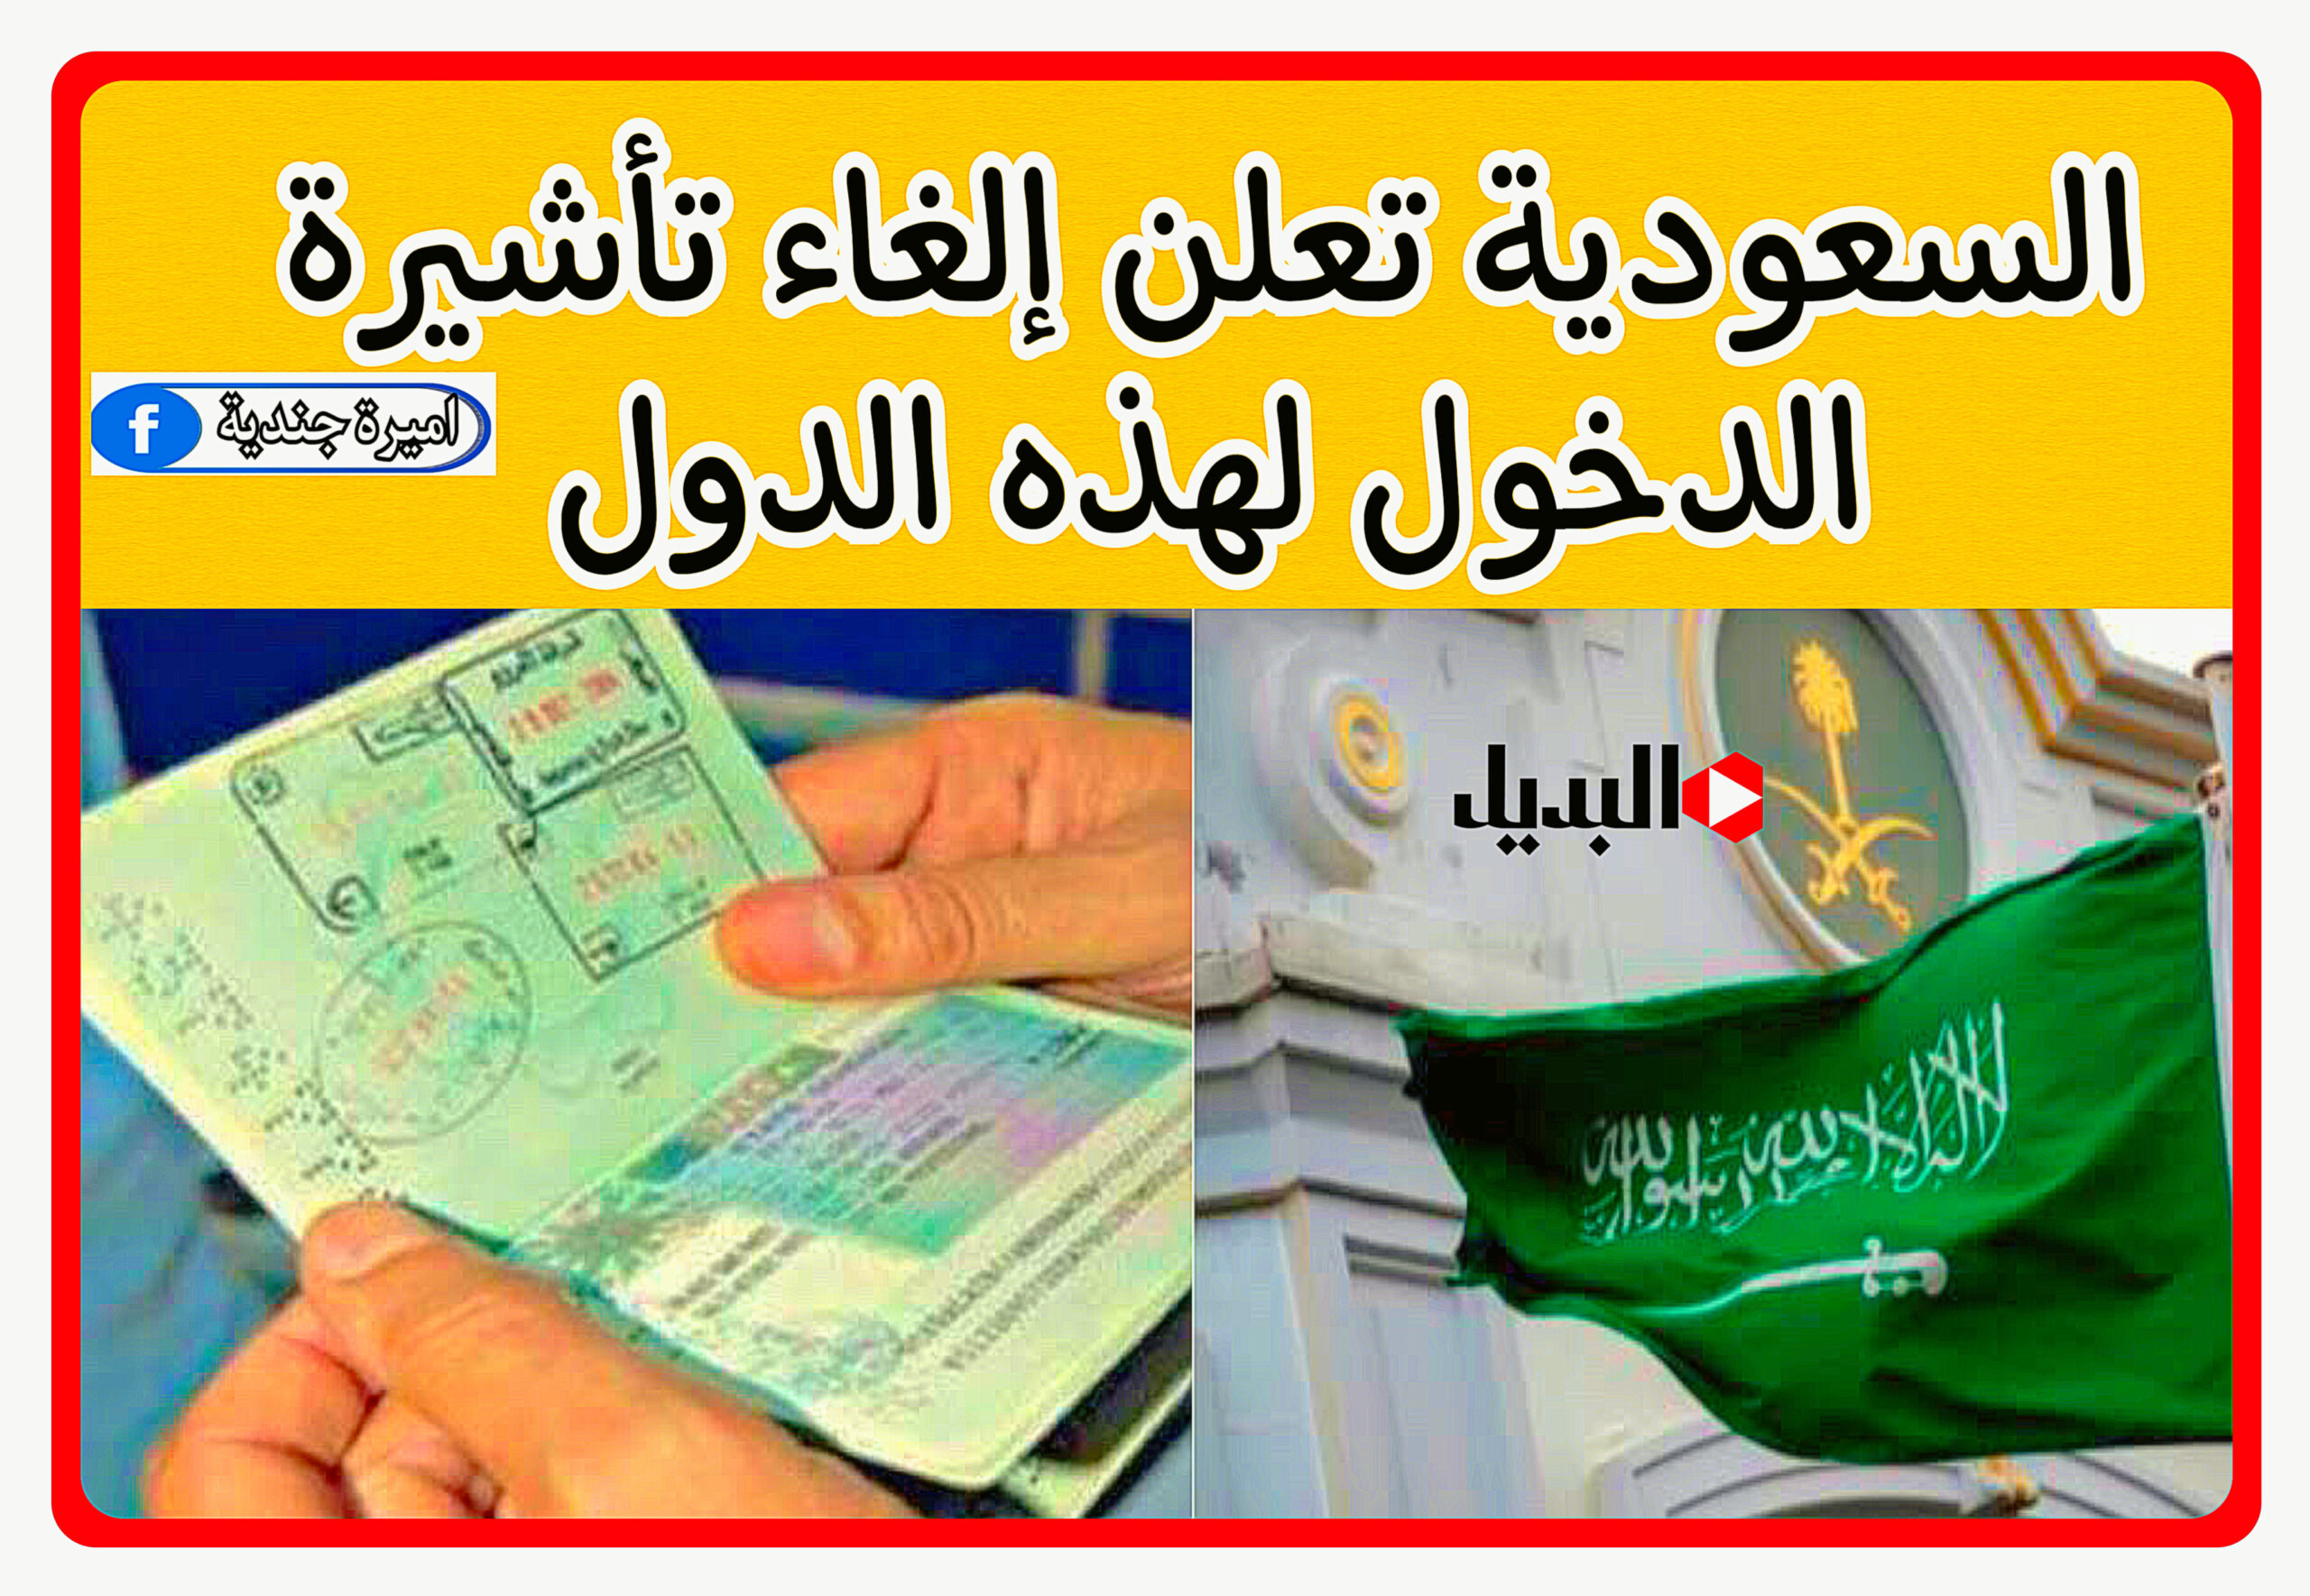 السعودية تعلن إلغاء تأشيرة الدخول لهذه الدول